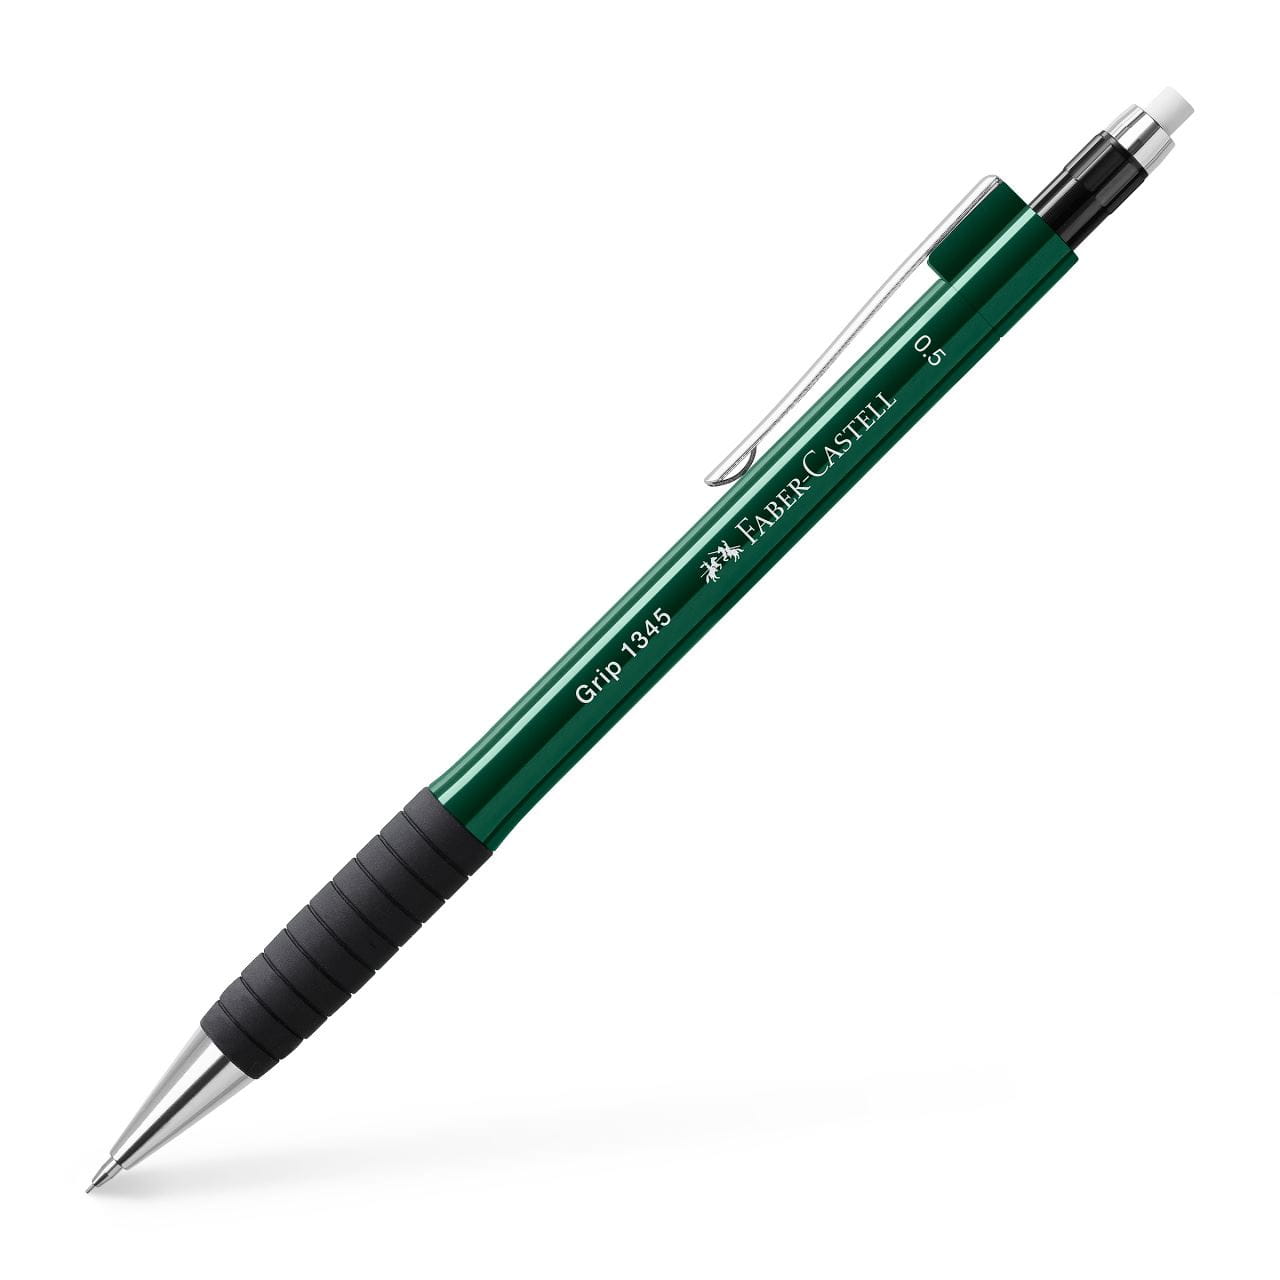 Faber-Castell - Grip 1345 mechanical pencil, 0.5 mm, green metallic